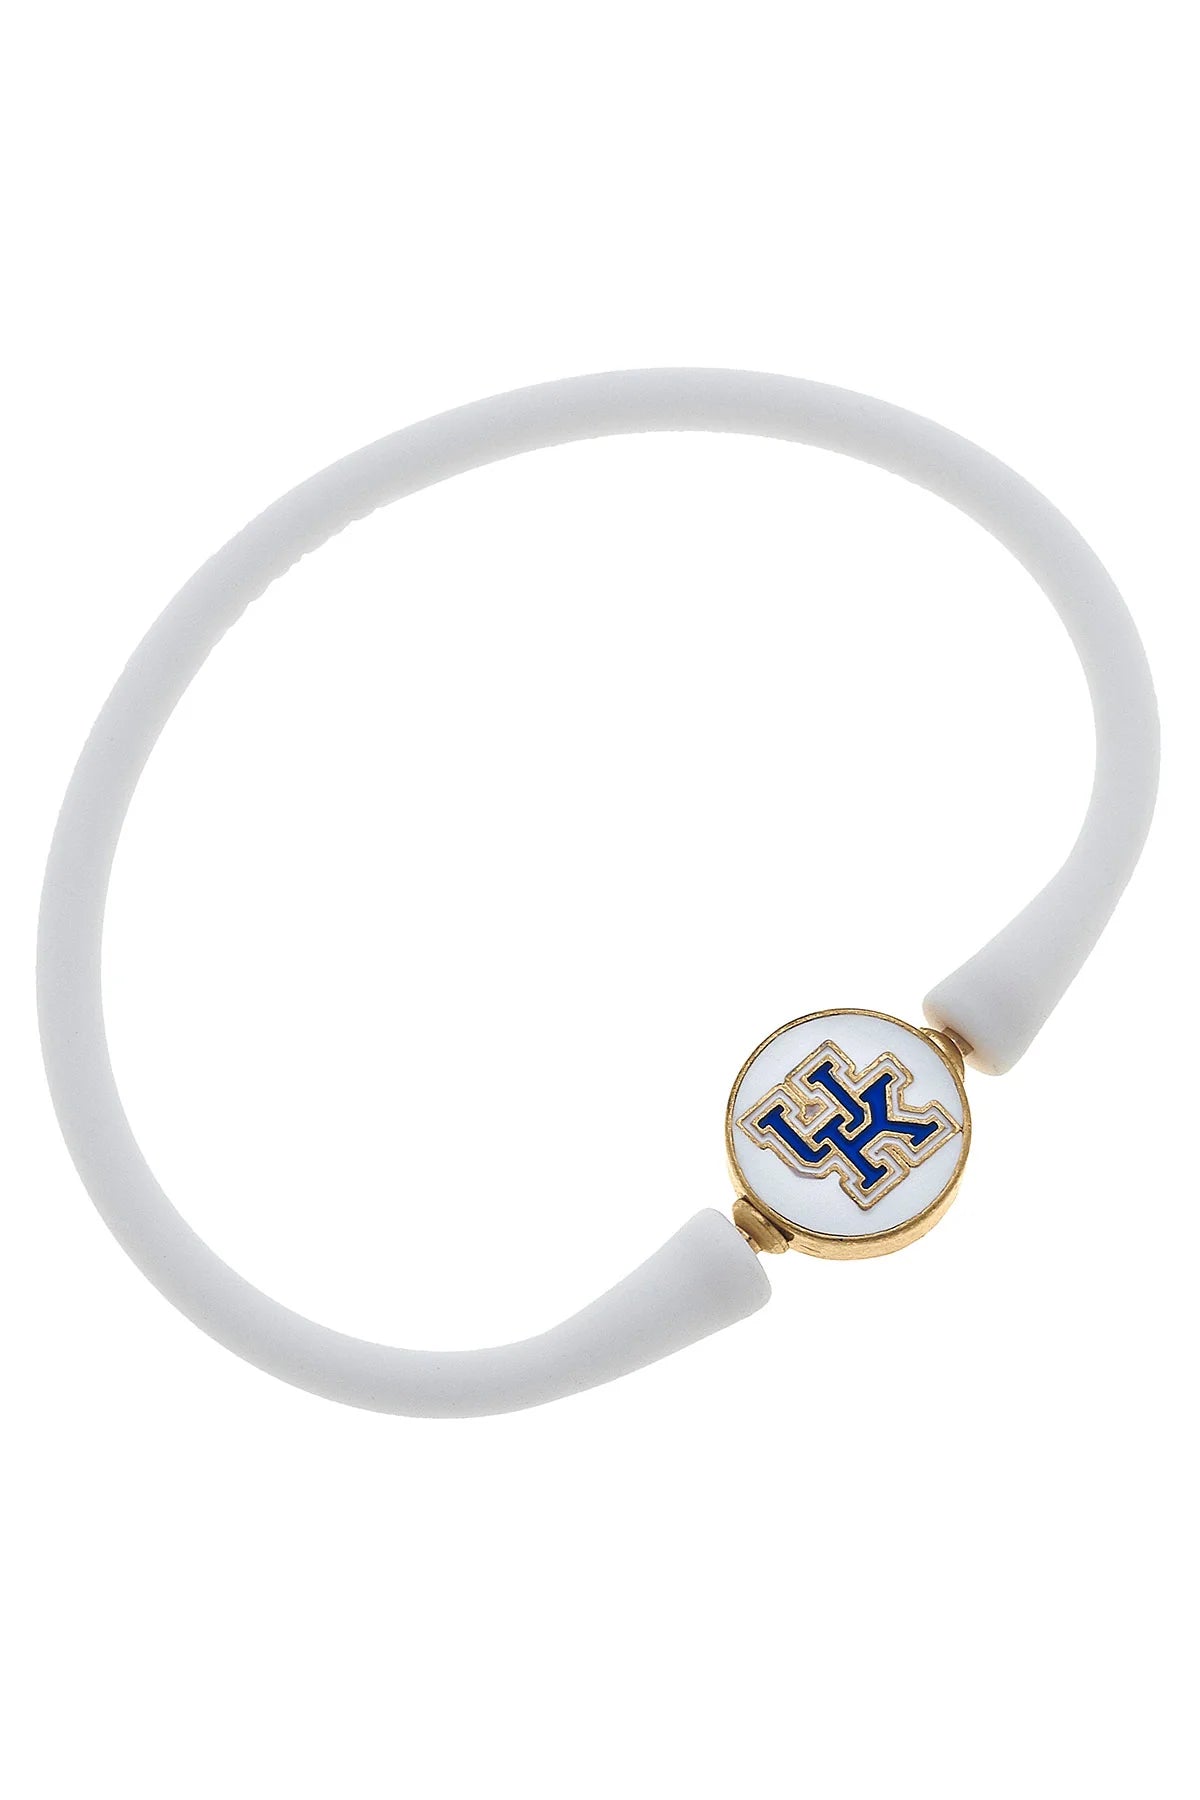 Kentucky Paperclip Chain & Enamel Logo Bracelet